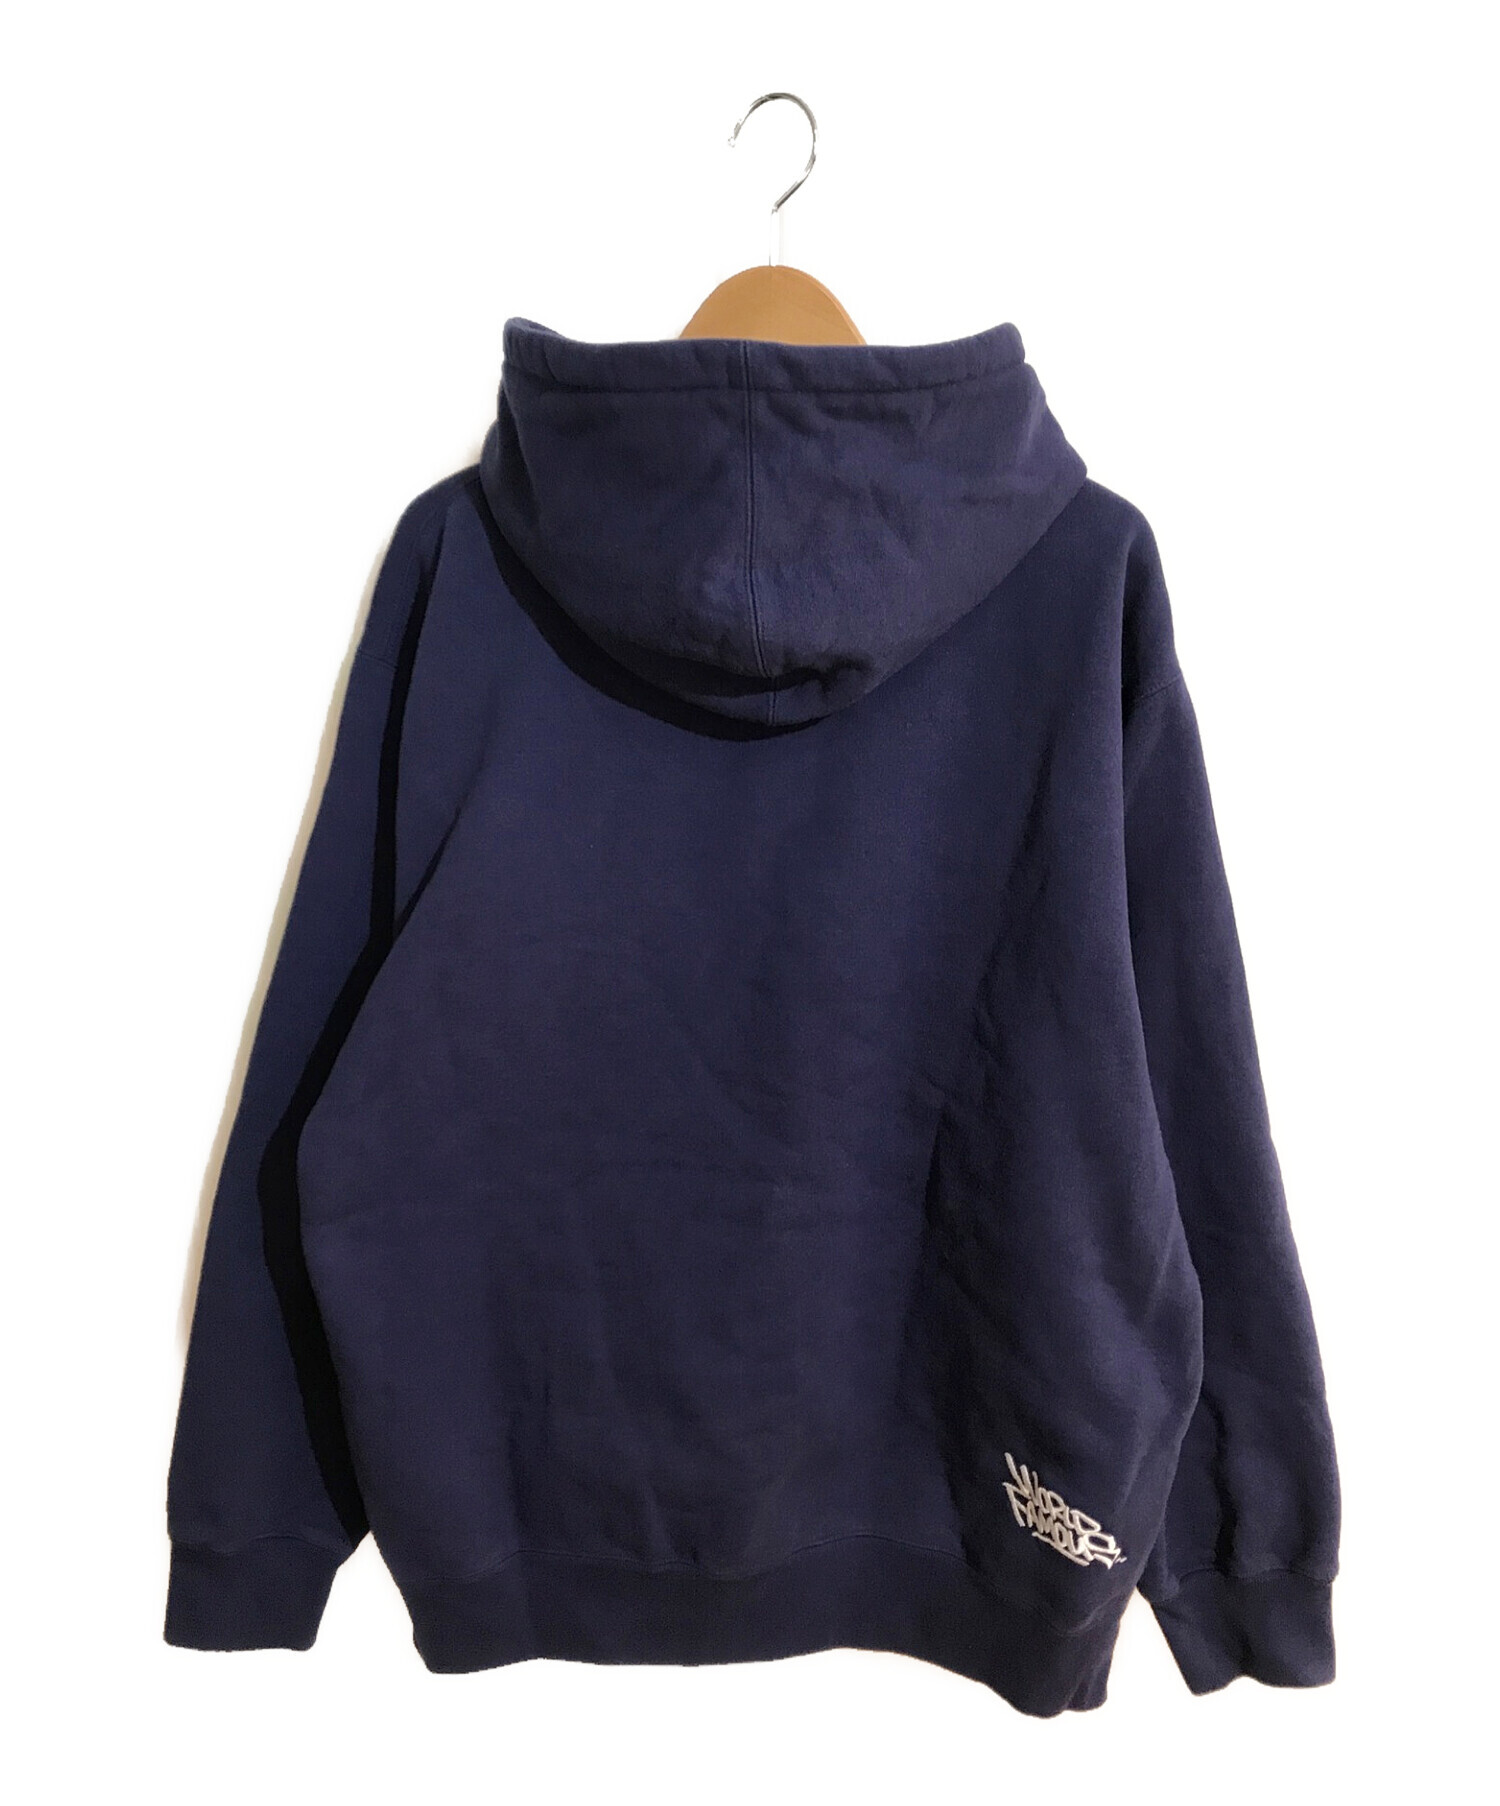 SUPREME (シュプリーム) Handstyle Hooded Sweatshirt 21SS/ハンドスタイル フーディ スウェットシャツ  ネイビー サイズ:L